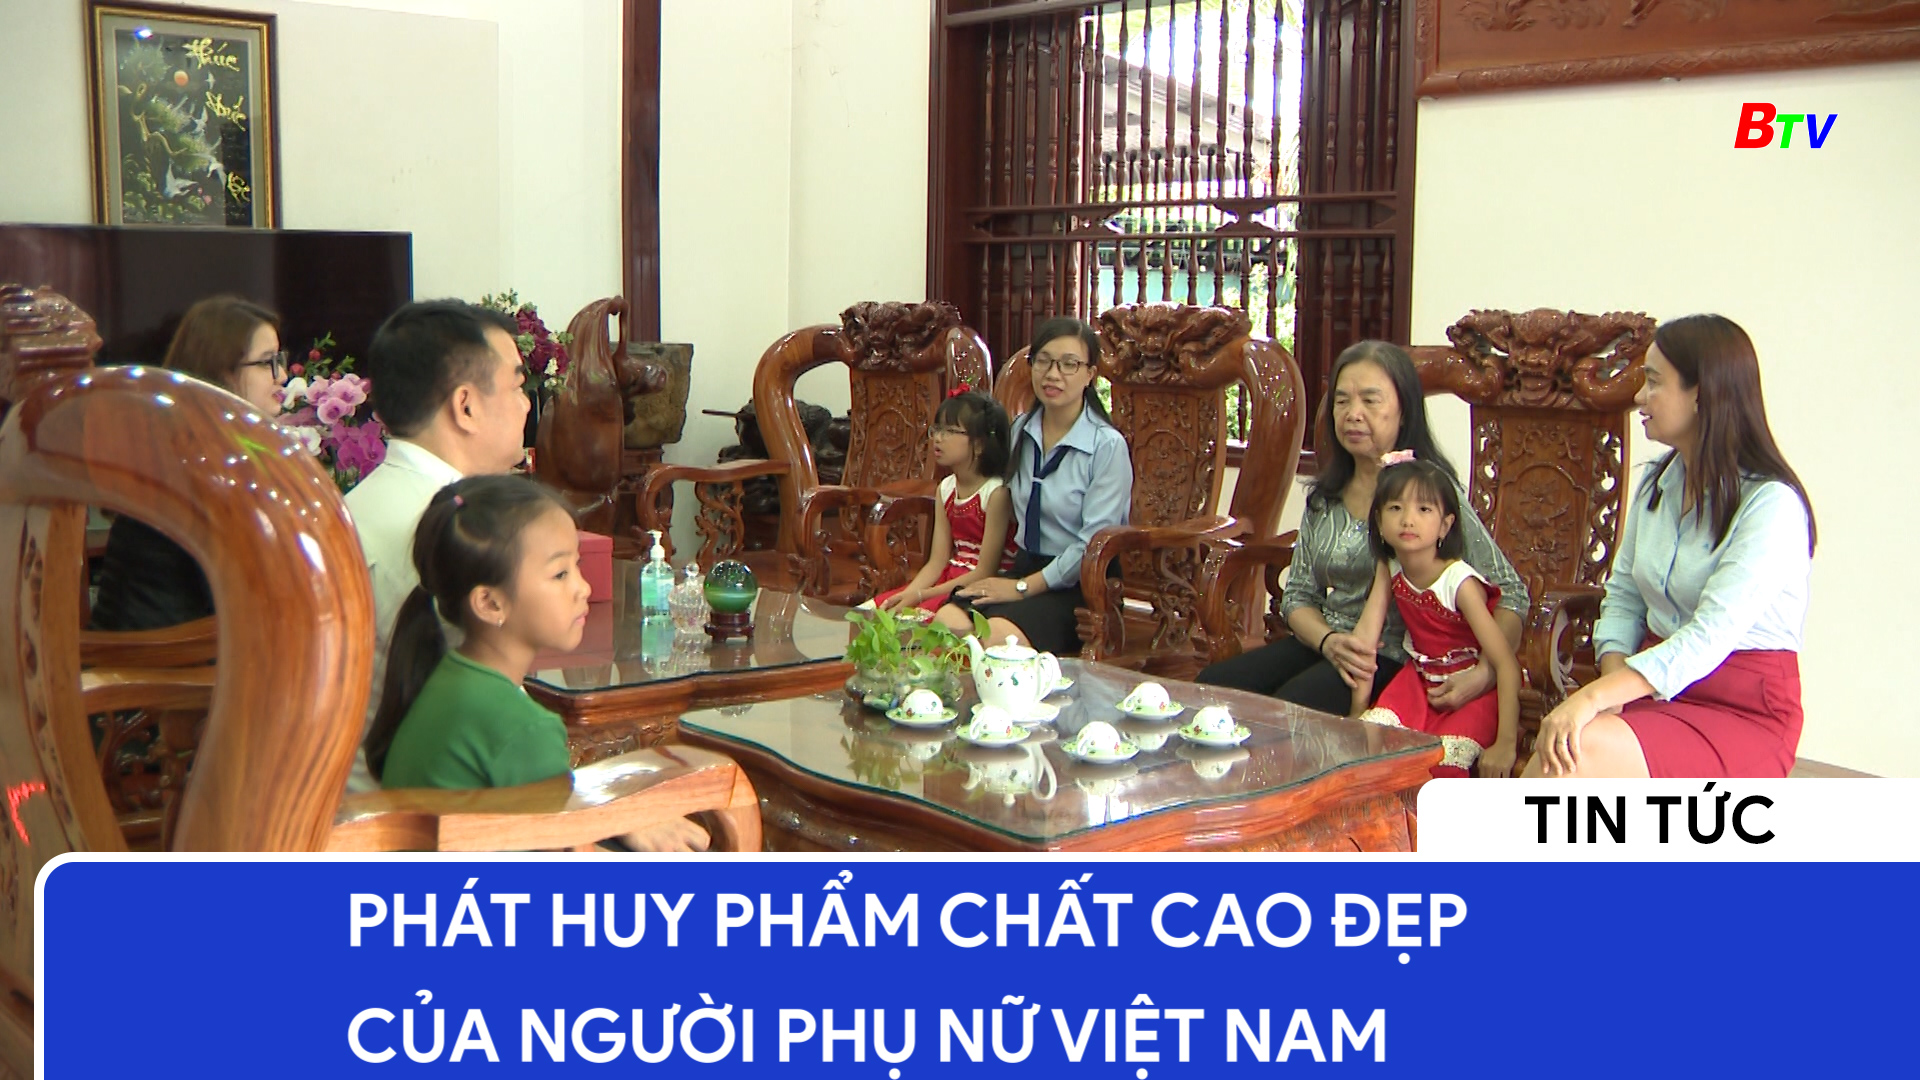 Phát huy phẩm chất cao đẹp của người phụ nữ Việt Nam